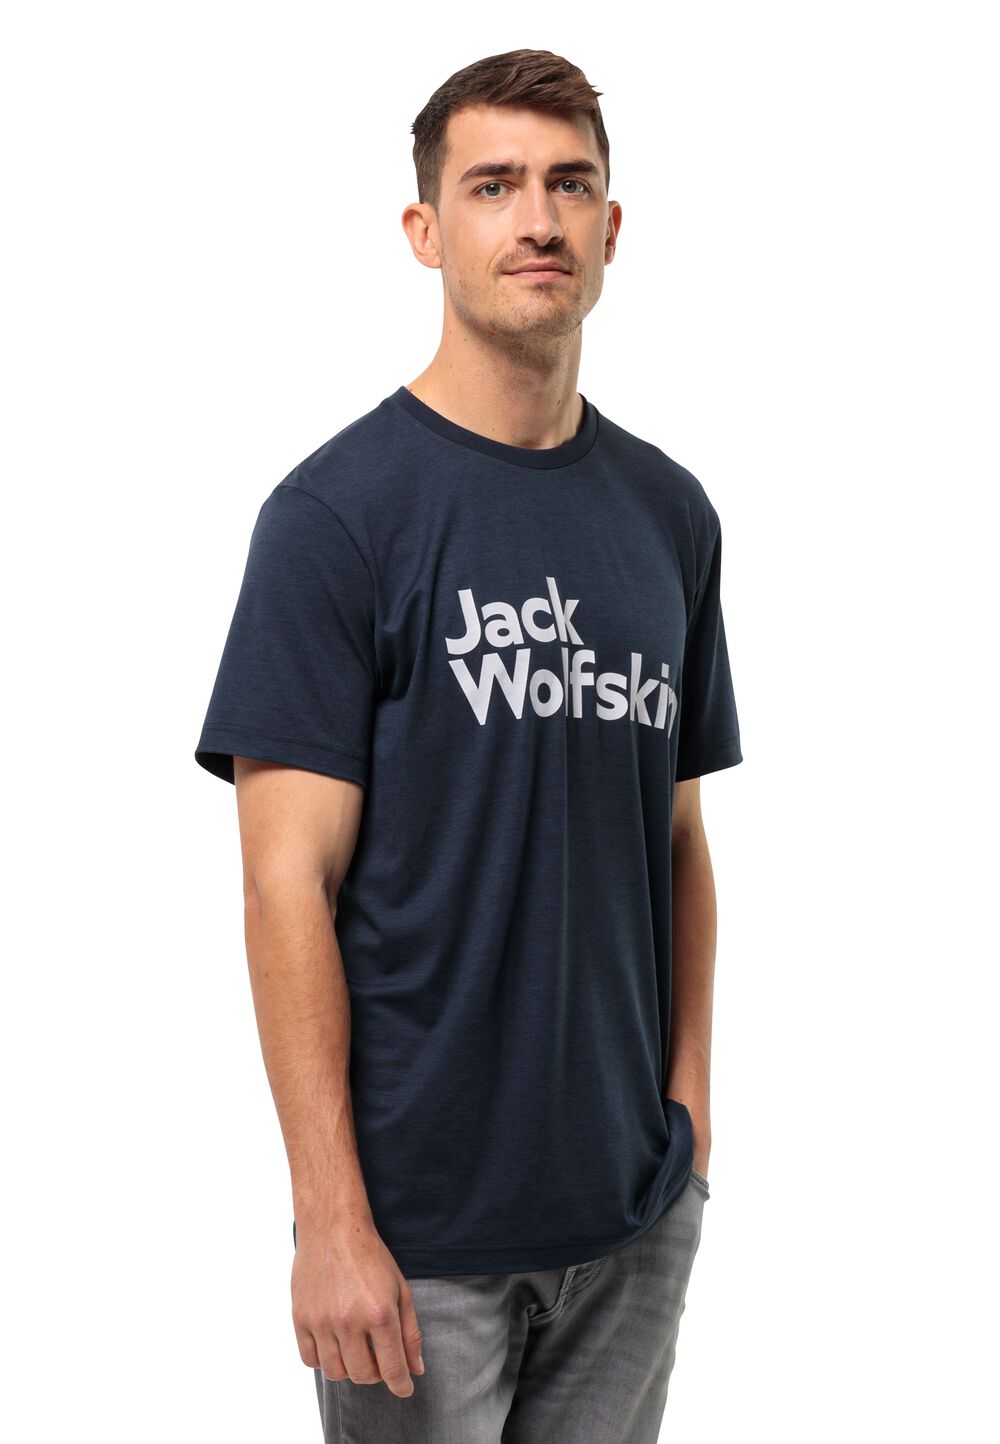 Jack Wolfskin Funktionsshirt Herren Brand T-Shirt Men XL blau night blue von Jack Wolfskin